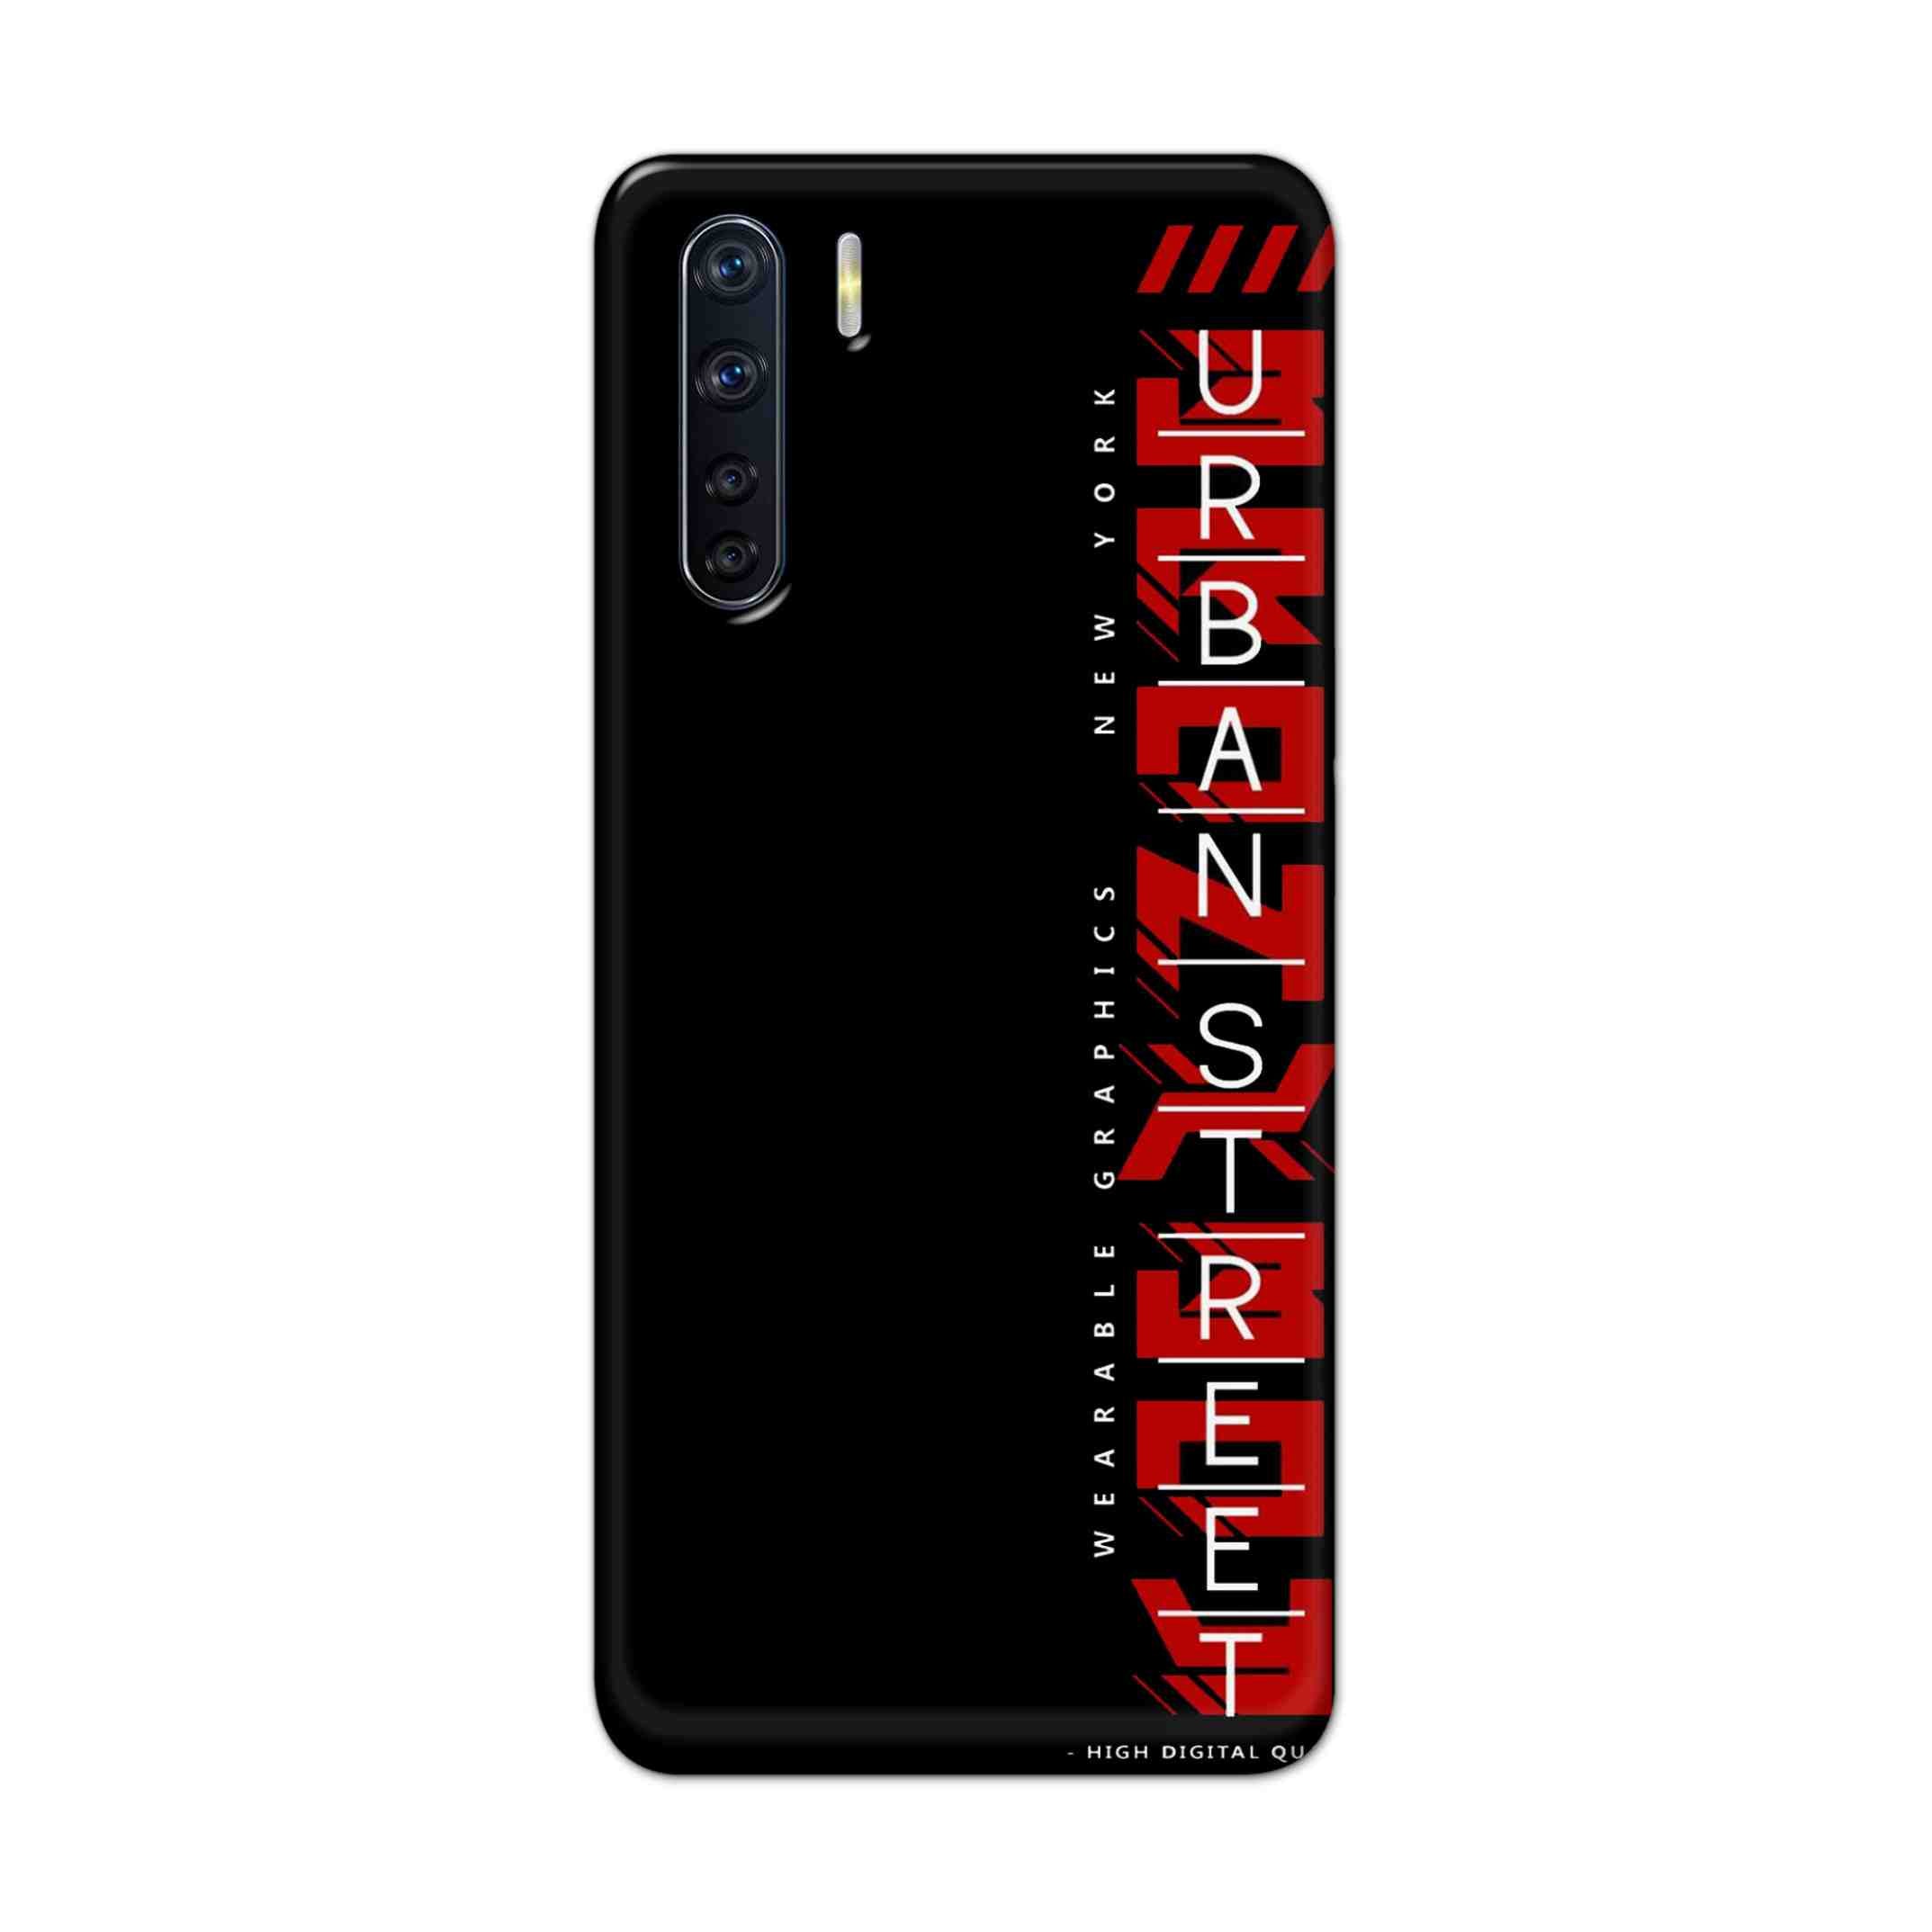 Buy Urban Street Hard Back Mobile Phone Case Cover For OPPO F15 Online